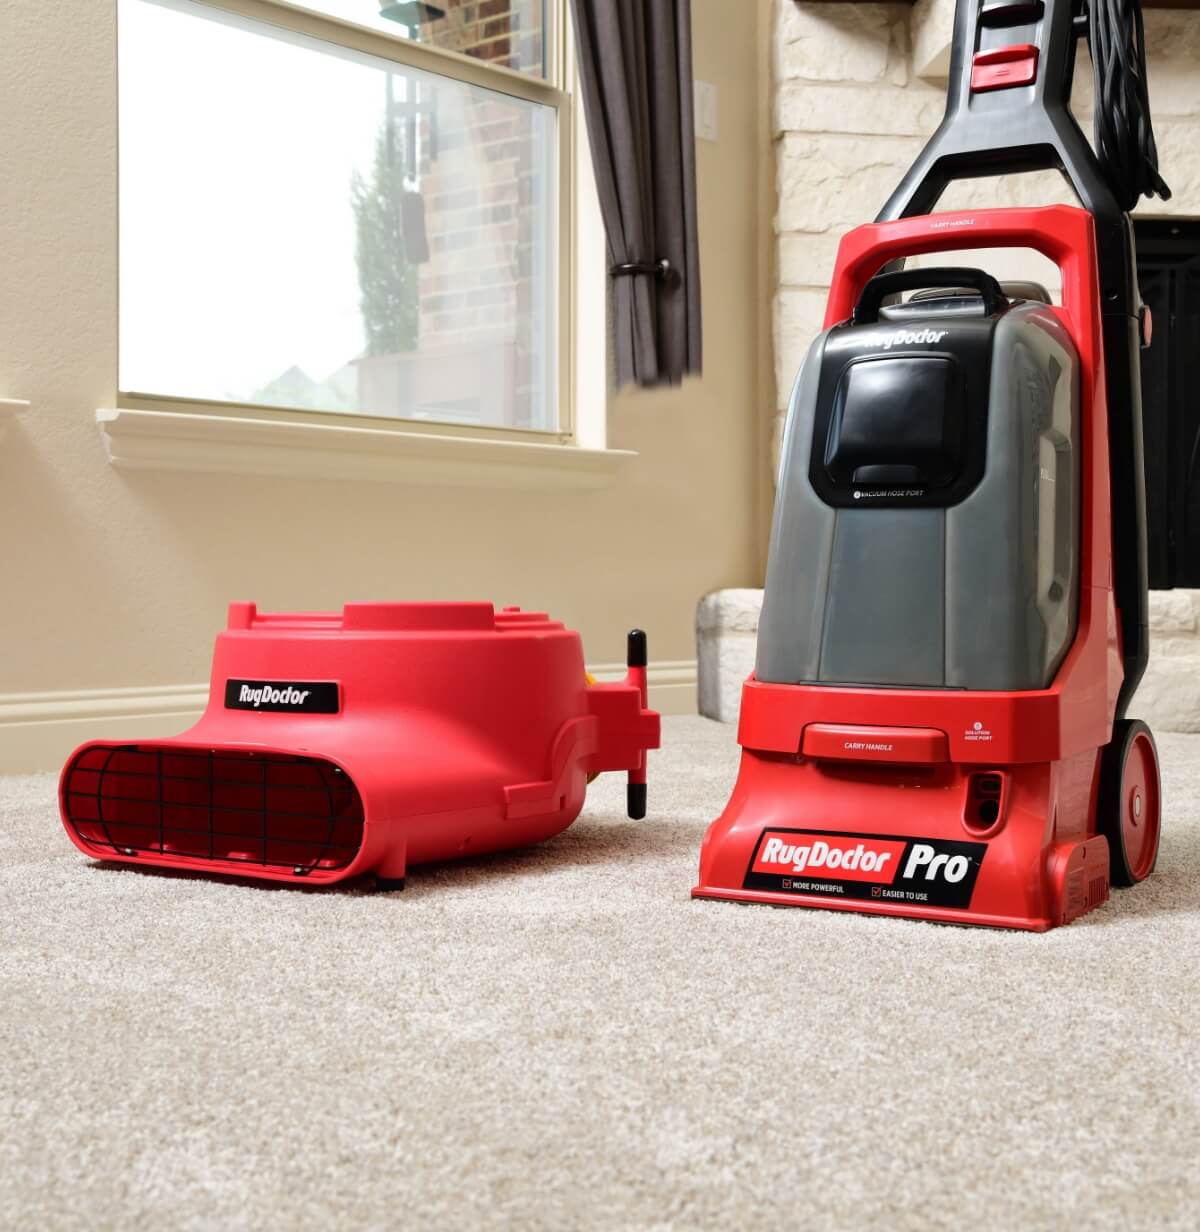 Rug Doctor Pro Deep Carpet Cleaner at